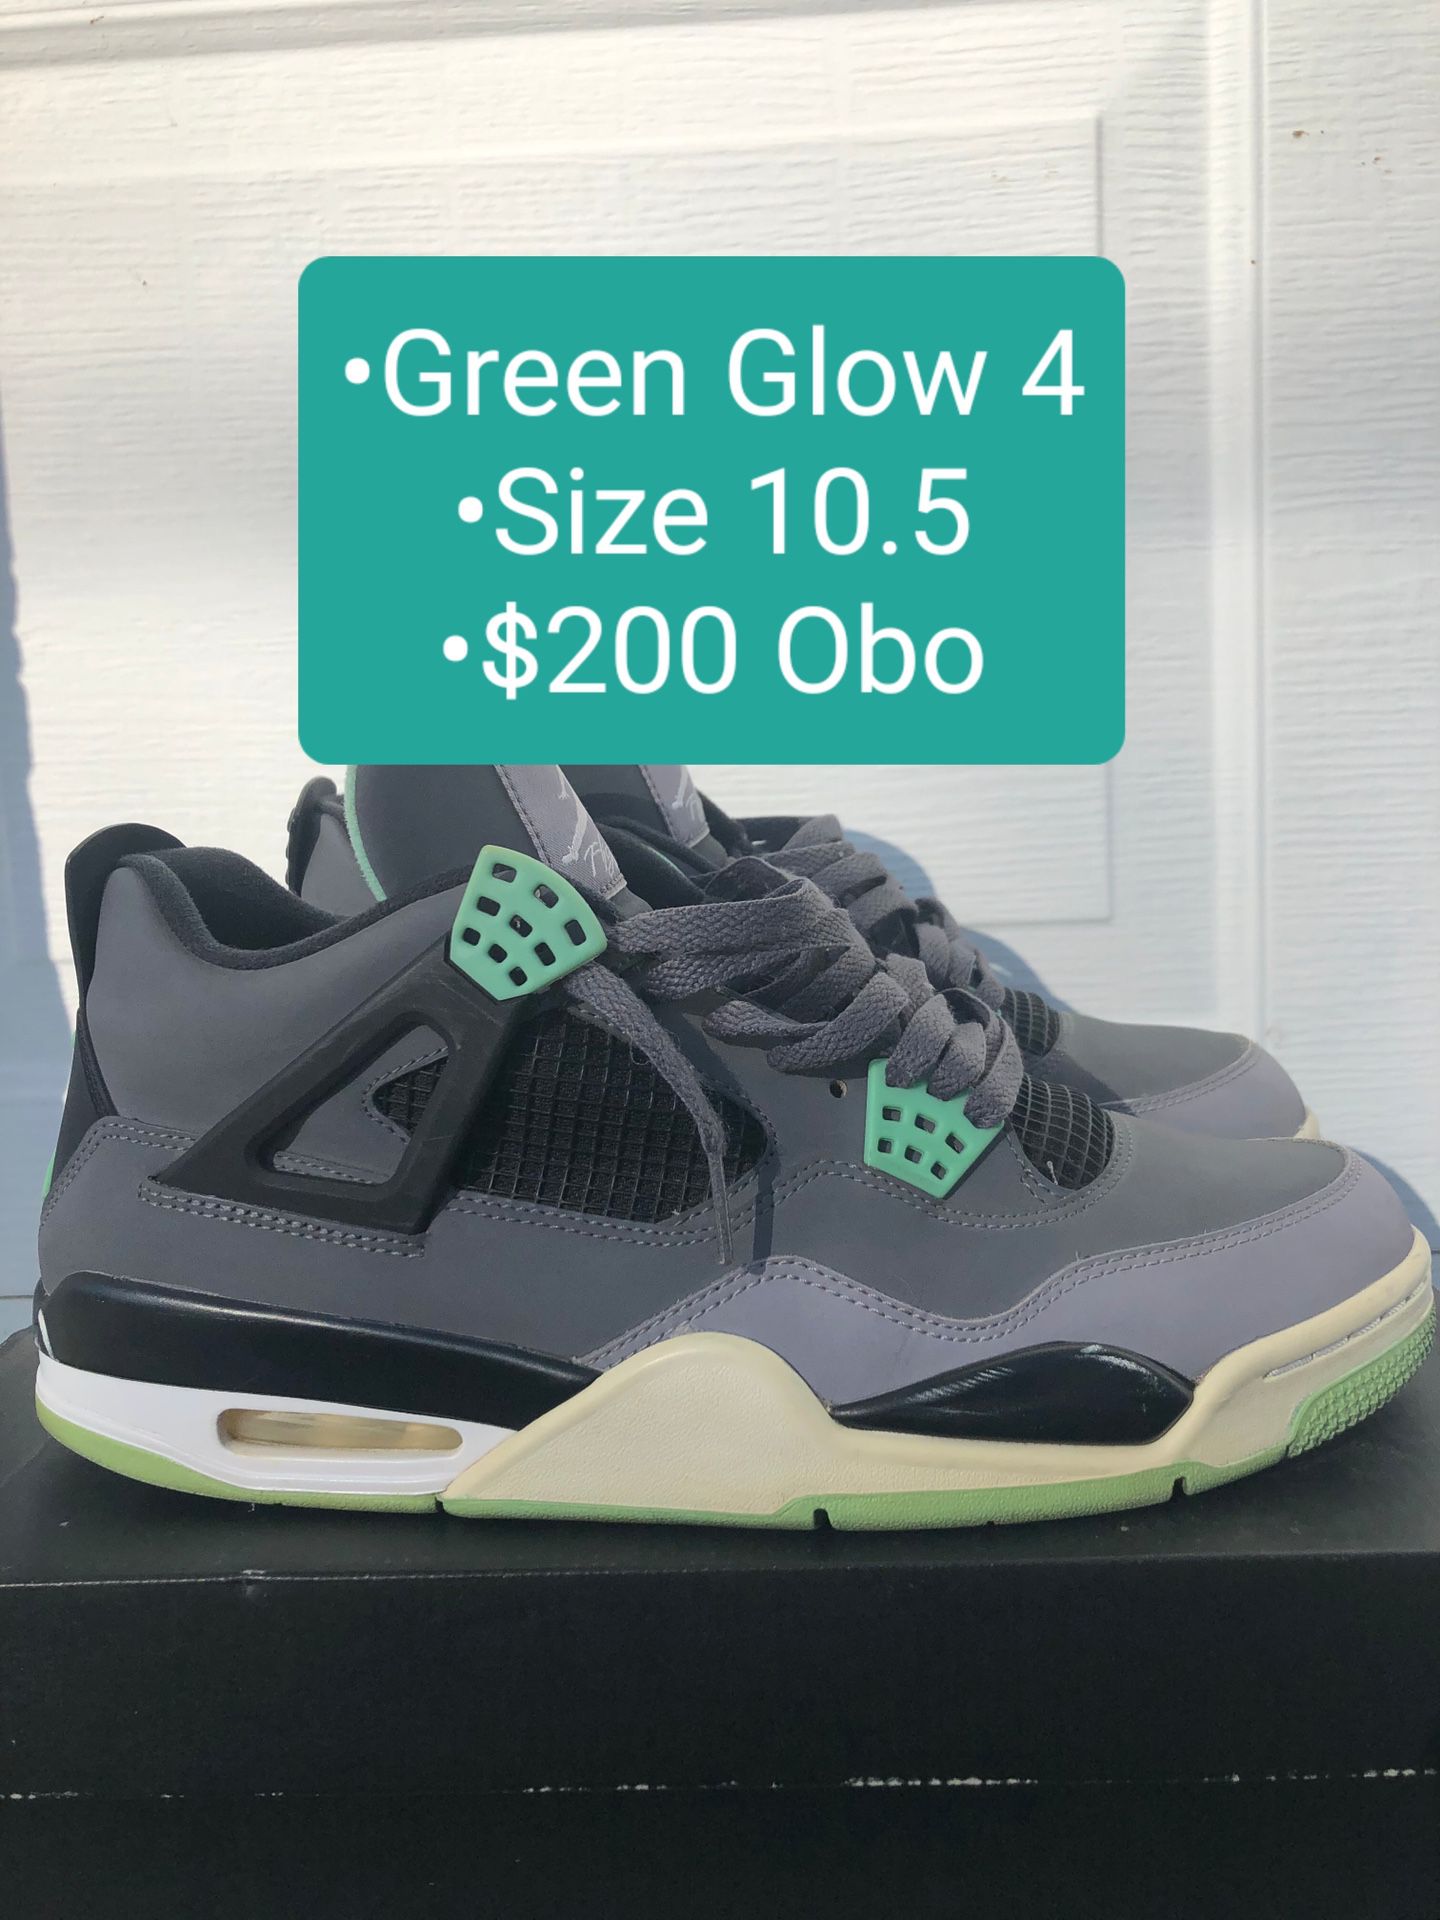 Mens Nike Air Jordan Retro 4 "Green Glow" Size 10.5 $200 Obo